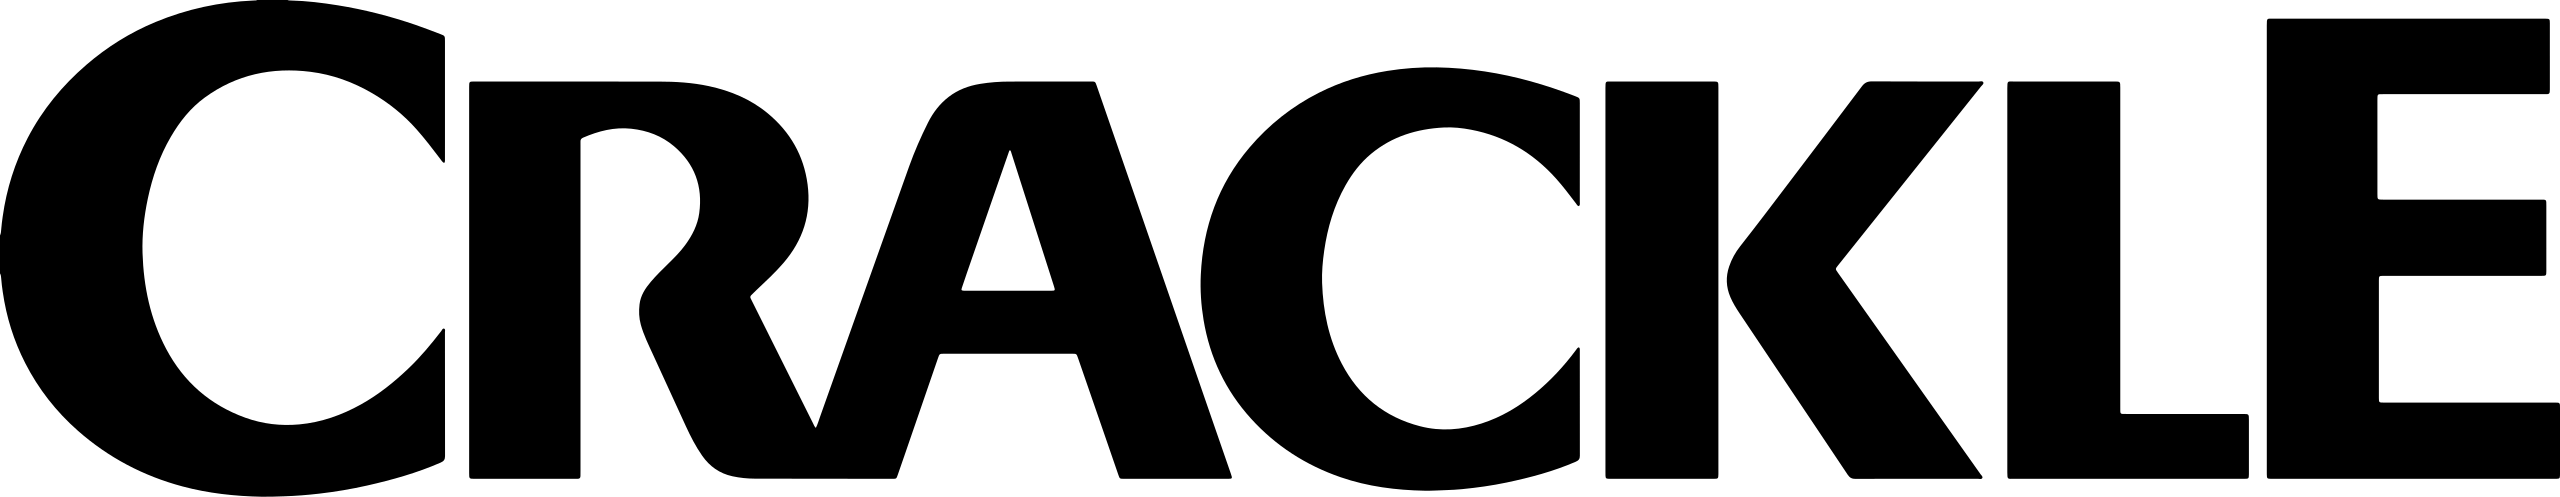 2560px-Logo_of_Crackle.svg-1.png